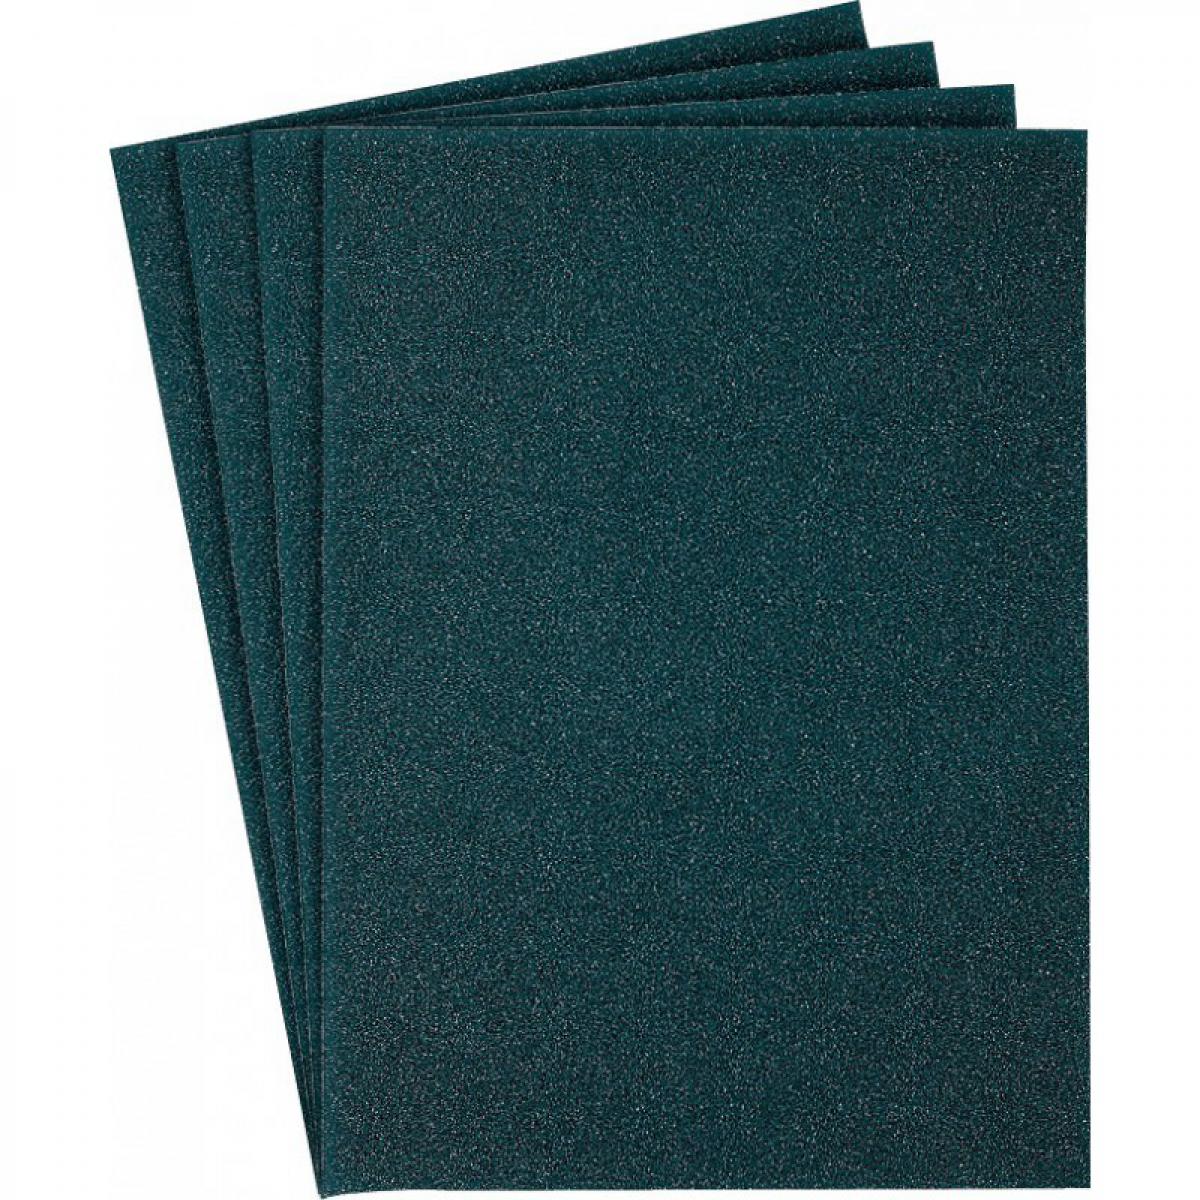 Klingspor - Papier abrasif bleu KL371x230x280mm Grain 80 Klingspor - Abrasifs et brosses